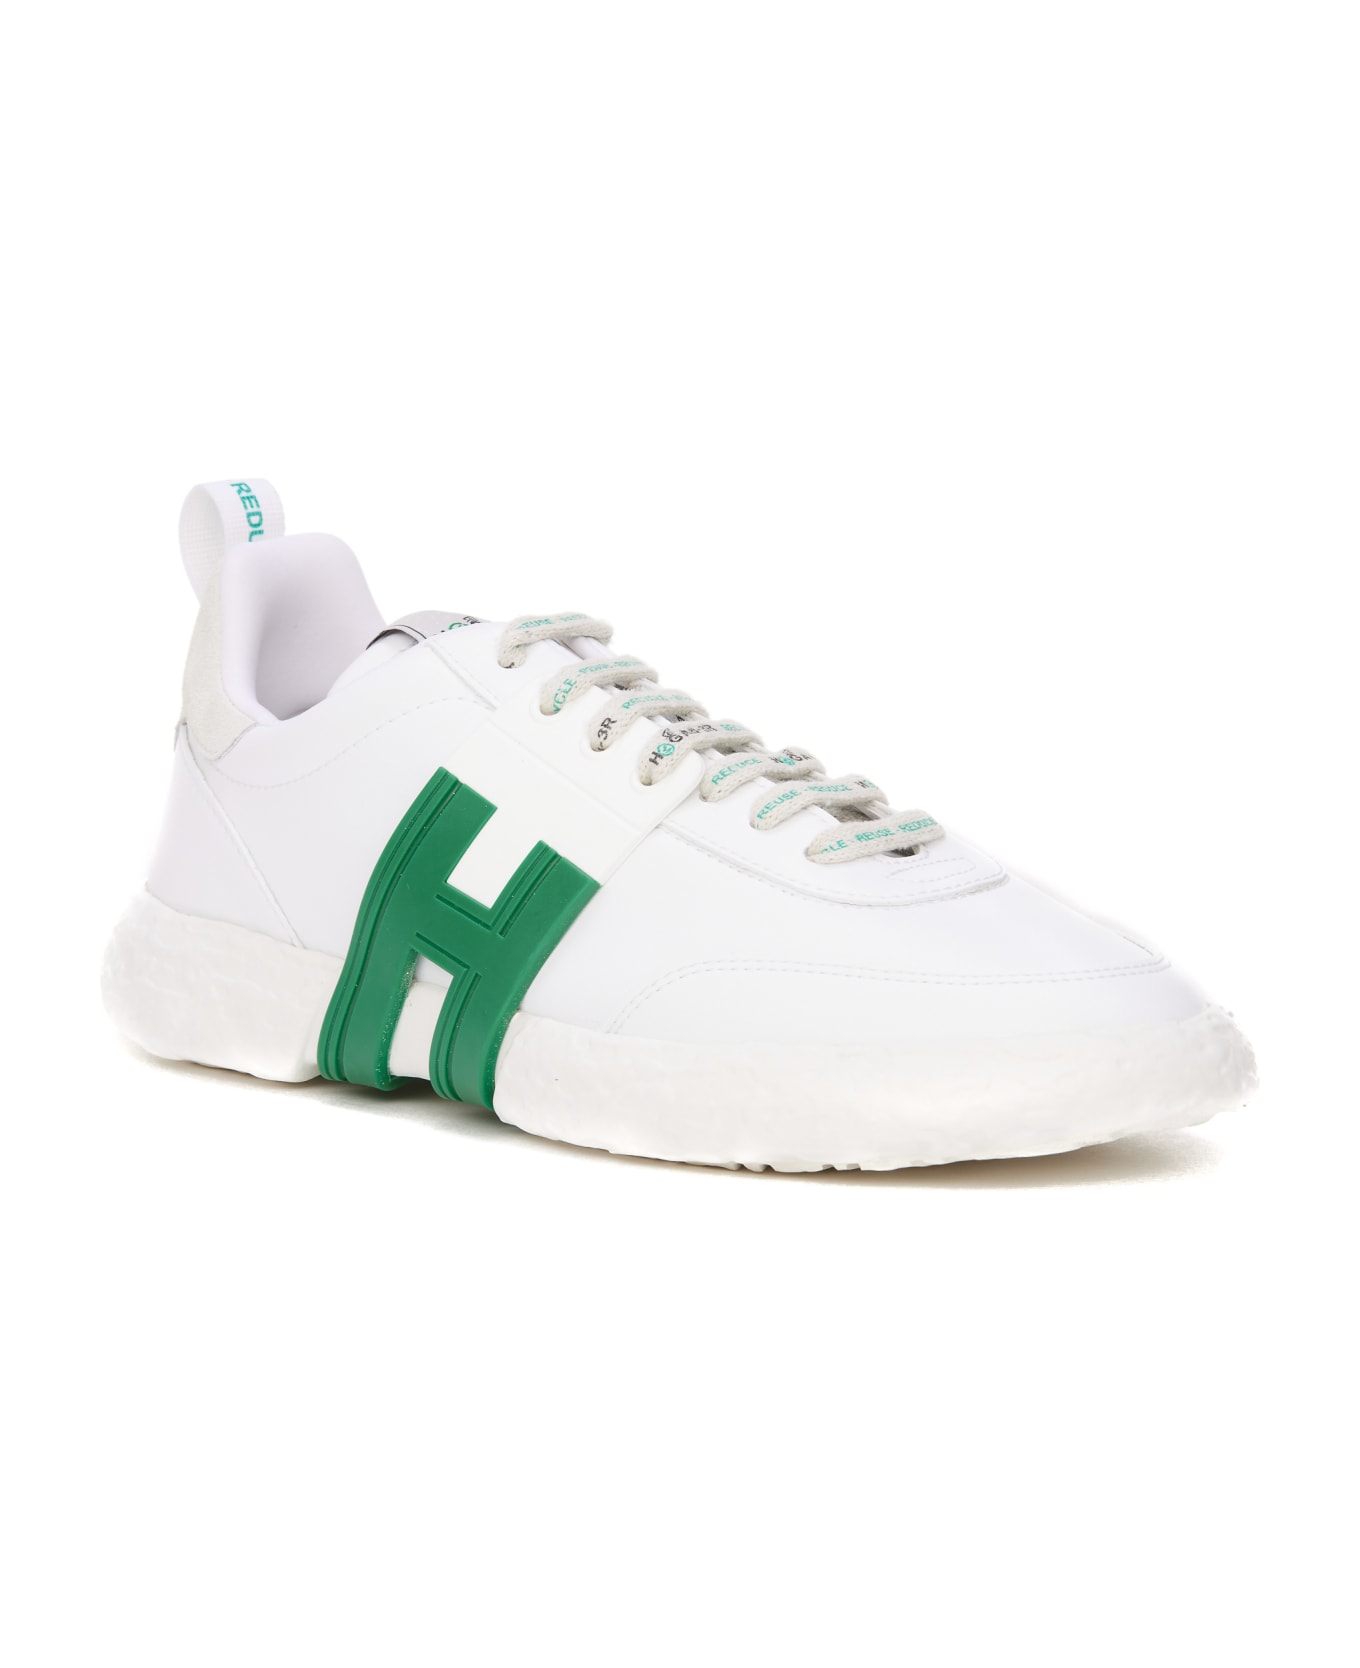 Hogan 3-r Sneakers - Verde